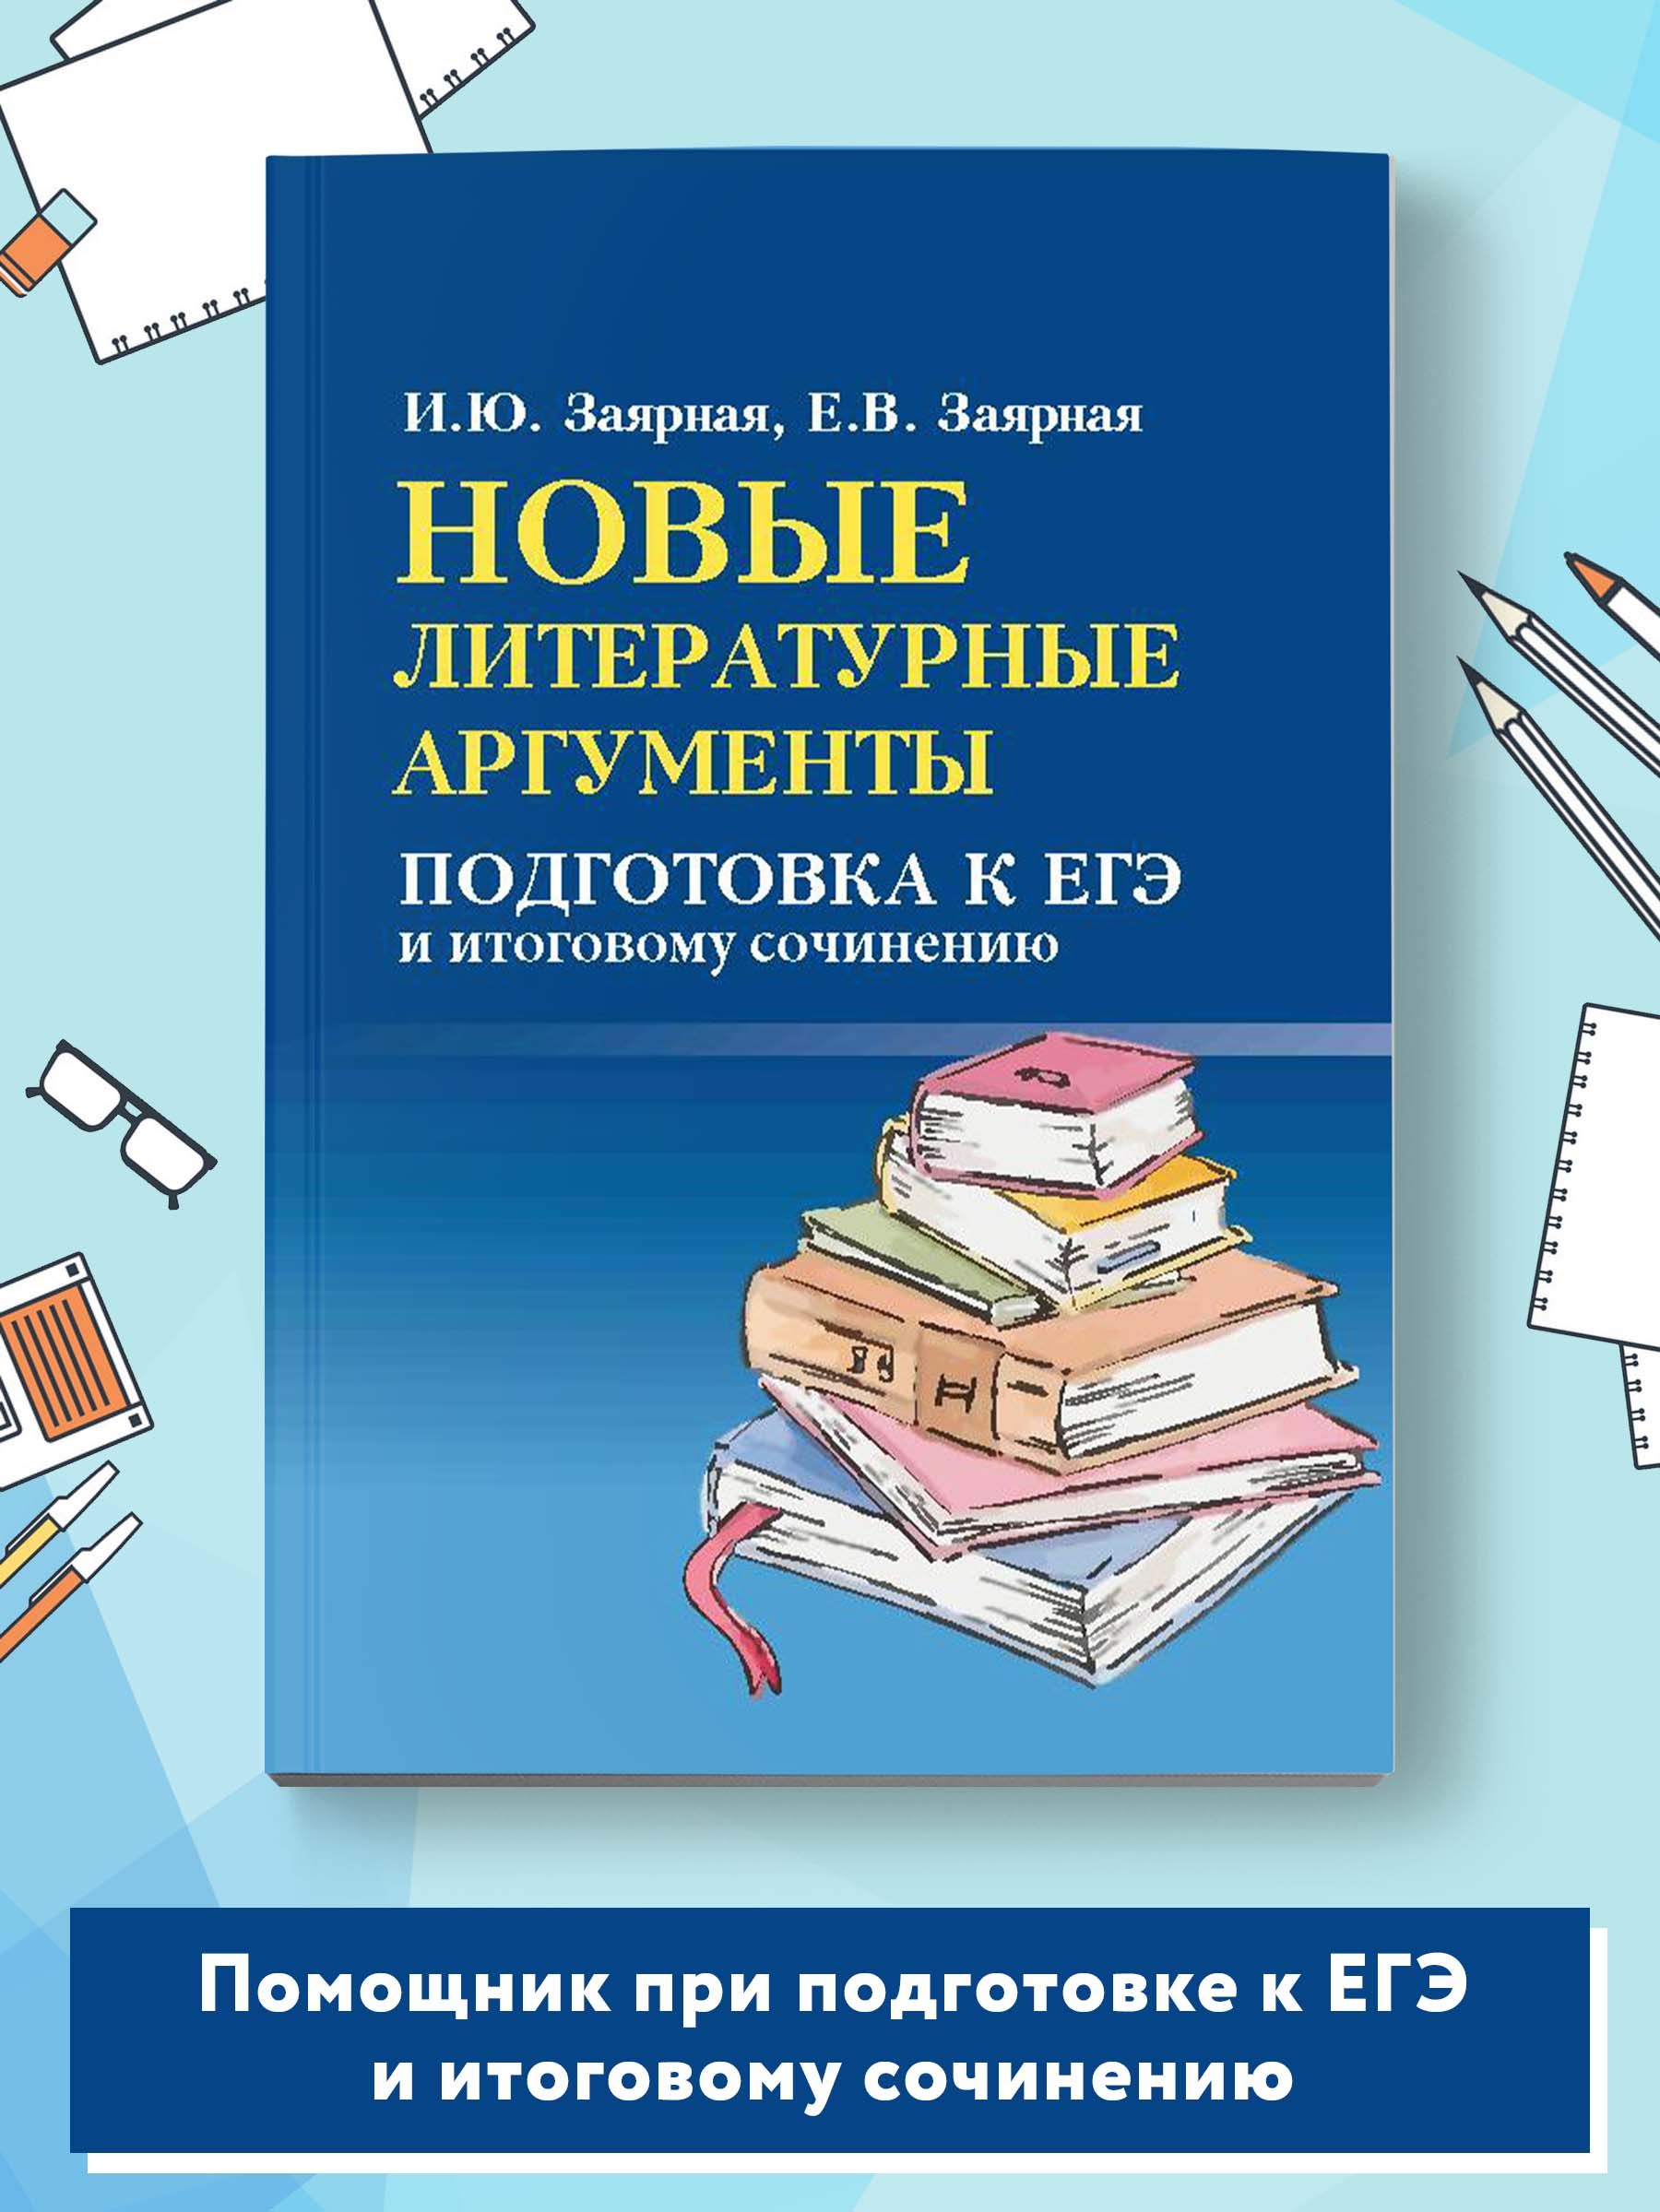 Материалы для подготовки к ЕГЭ по русскому языку. Пишем сочинение-рассуждение